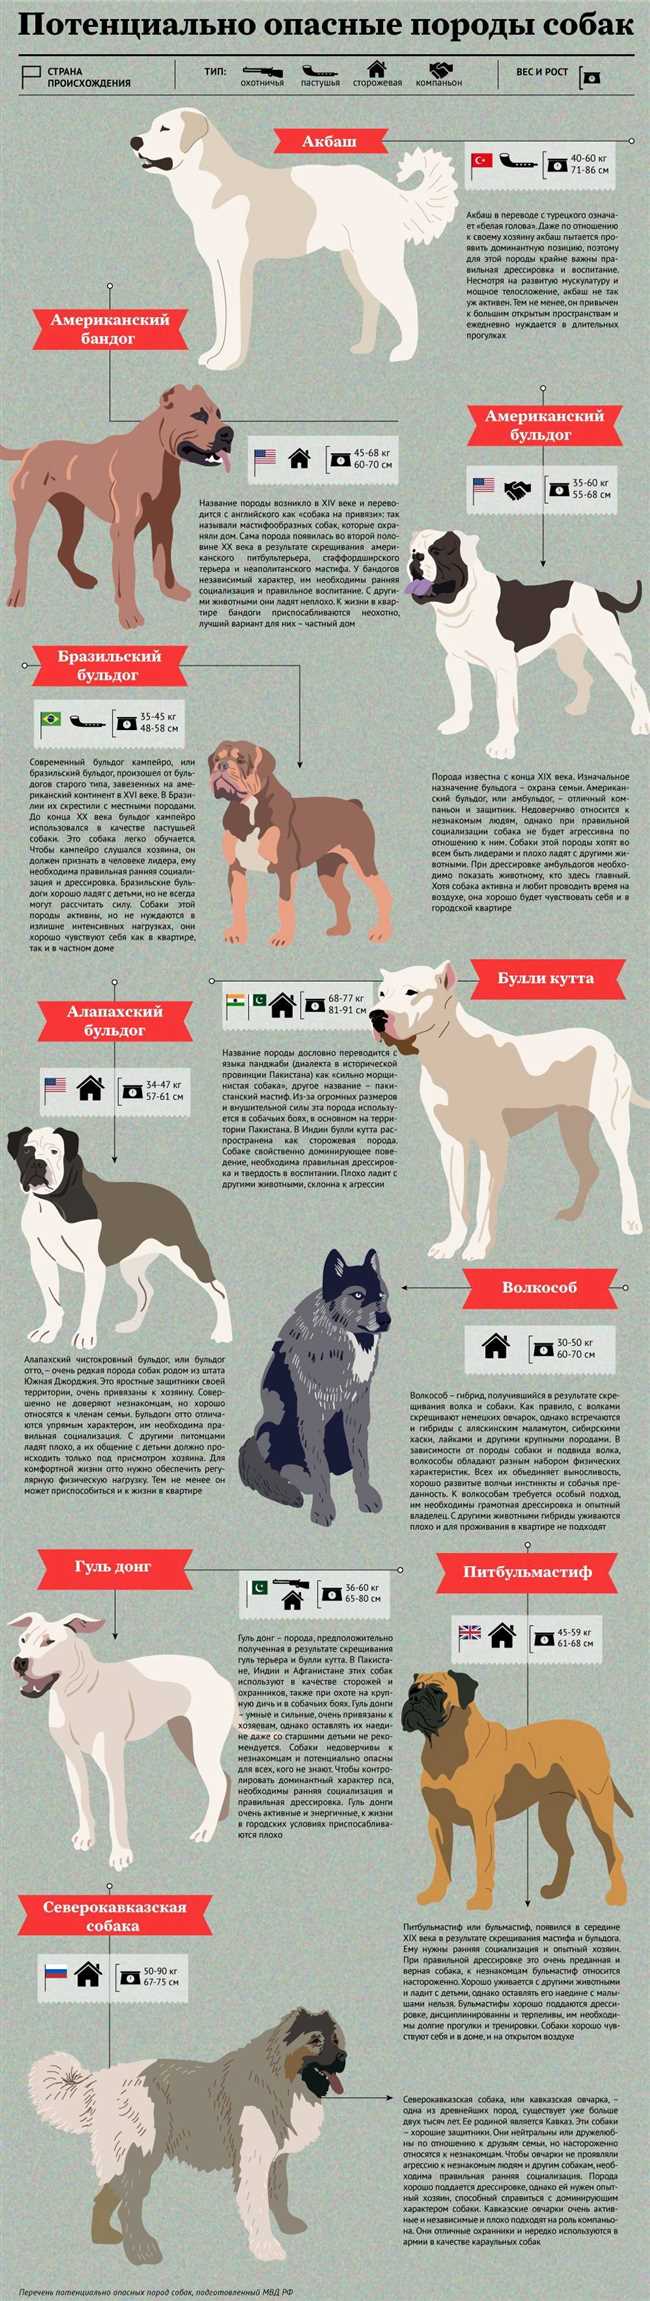 Какие породы собак относятся к опасным?